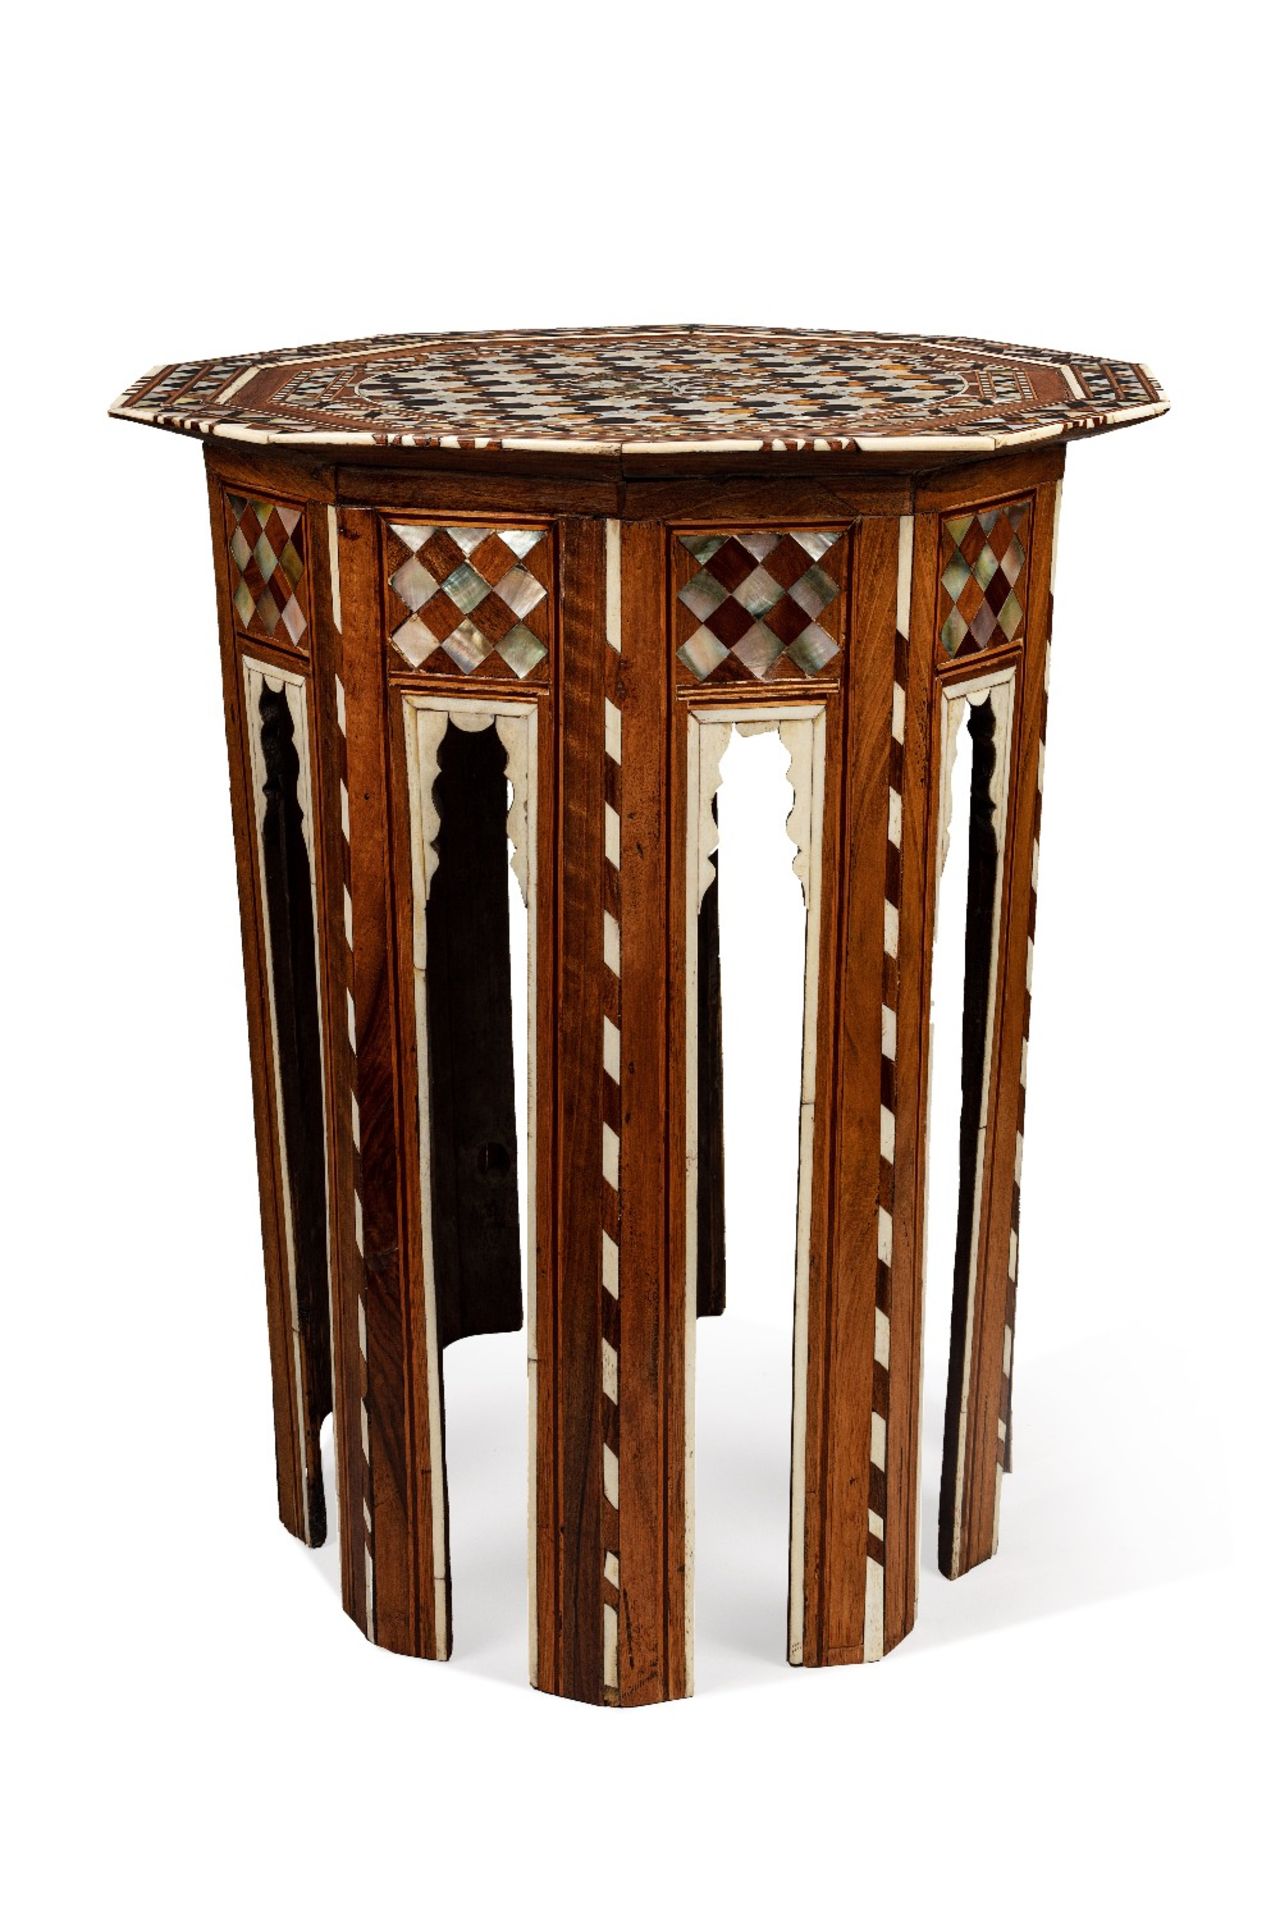 Grand guéridon ottomanTurquie, XVIIIe siècleTable de forme décagonale en bois incrusté de nacre, d' - Bild 2 aus 2